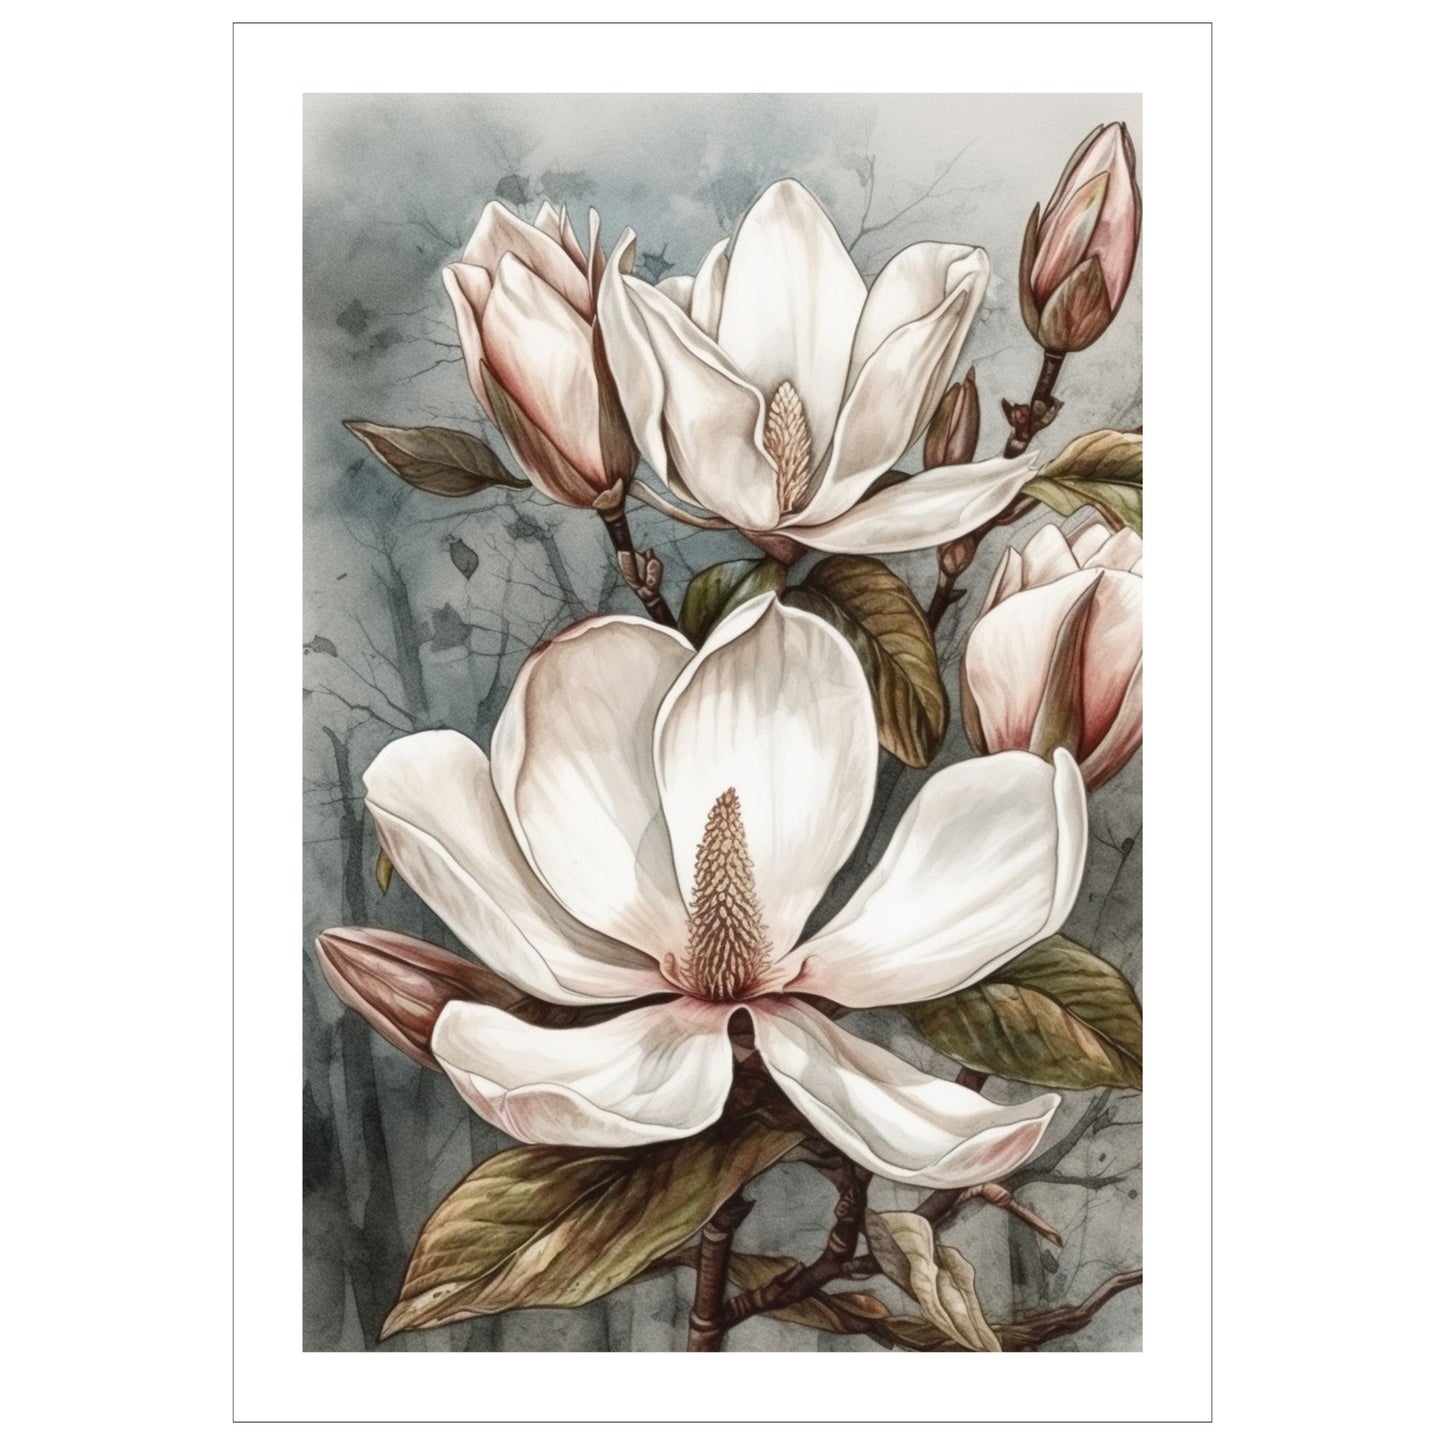 Grafisk motiv av Magnolia blomster trykket på plakat. Rundt bildet er det en dekorativ hvit kant.